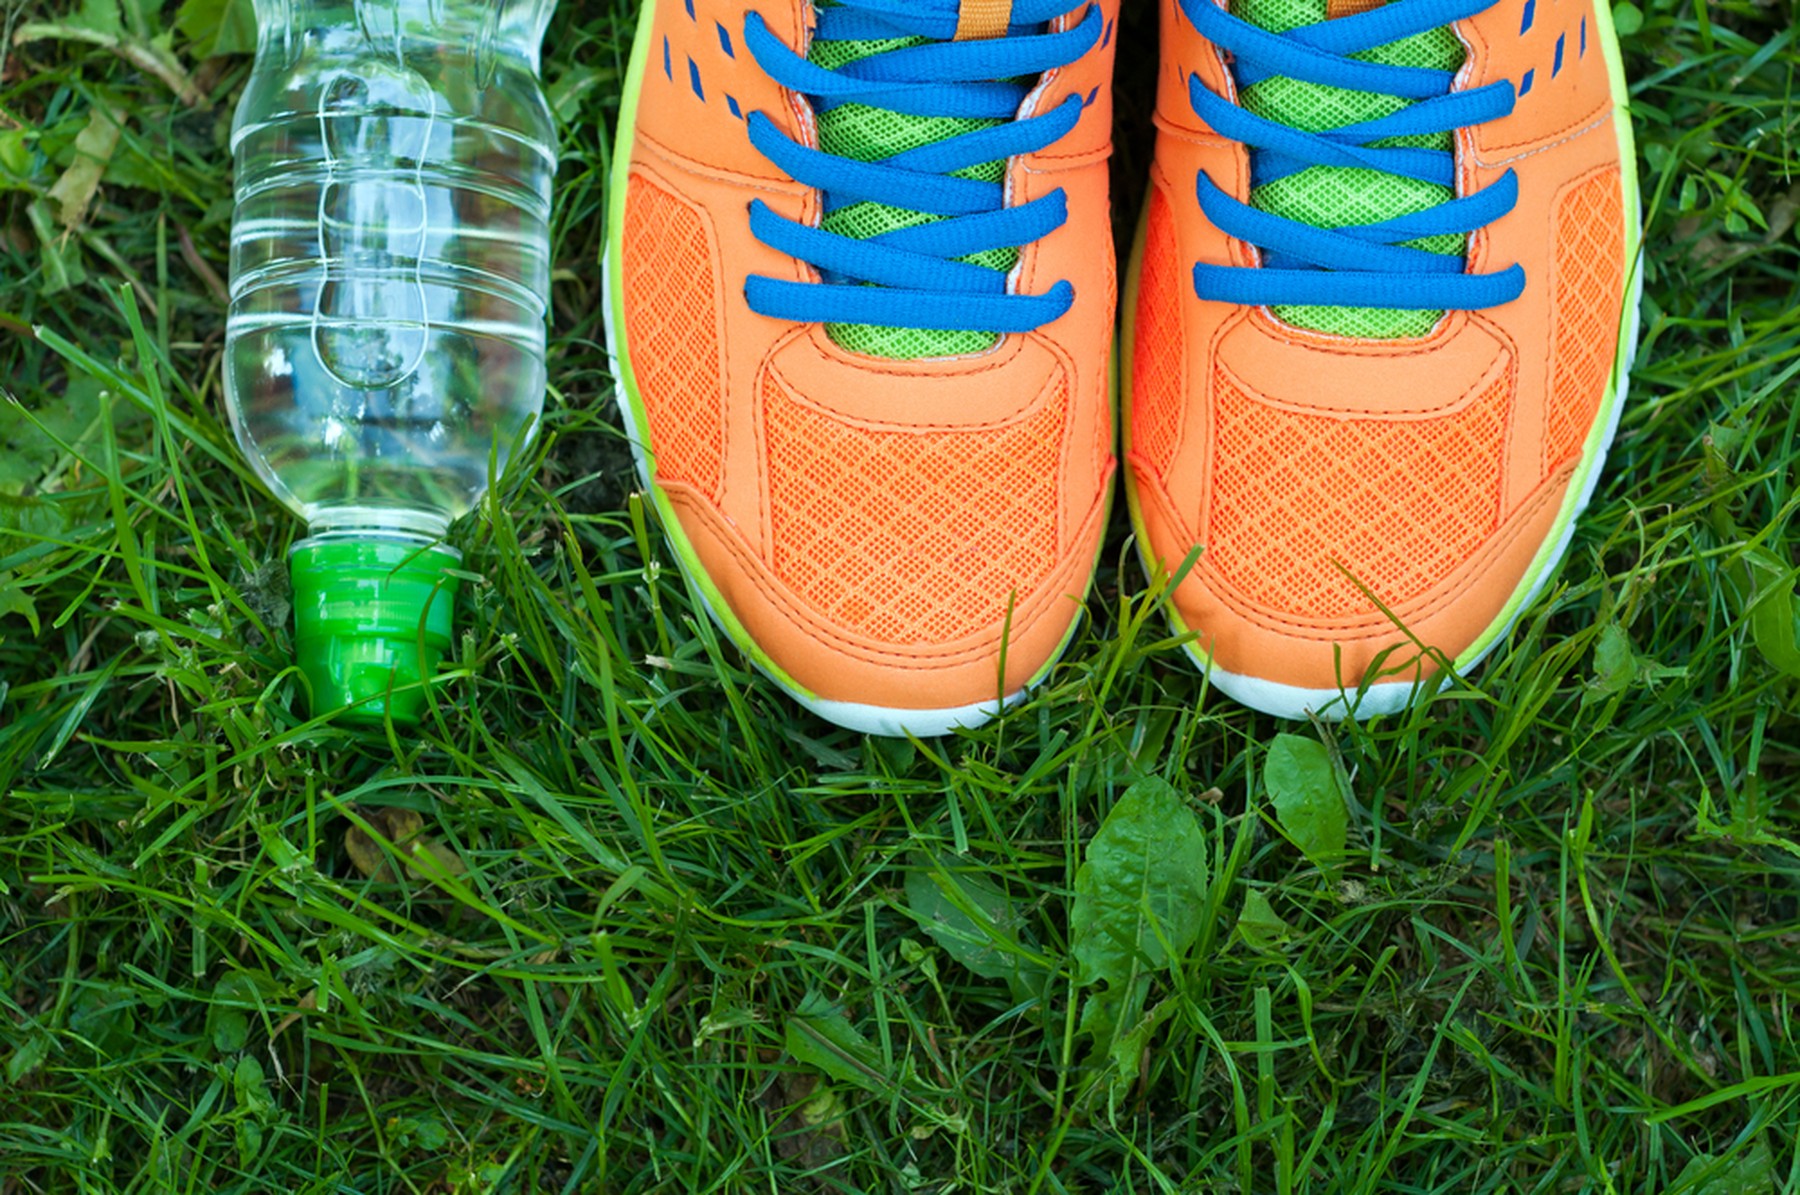 Zapatillas deportivas naranjas con los cordones azules sobre el césped verde. Al lado hay una botella de plástico de agua con el tapón verde.